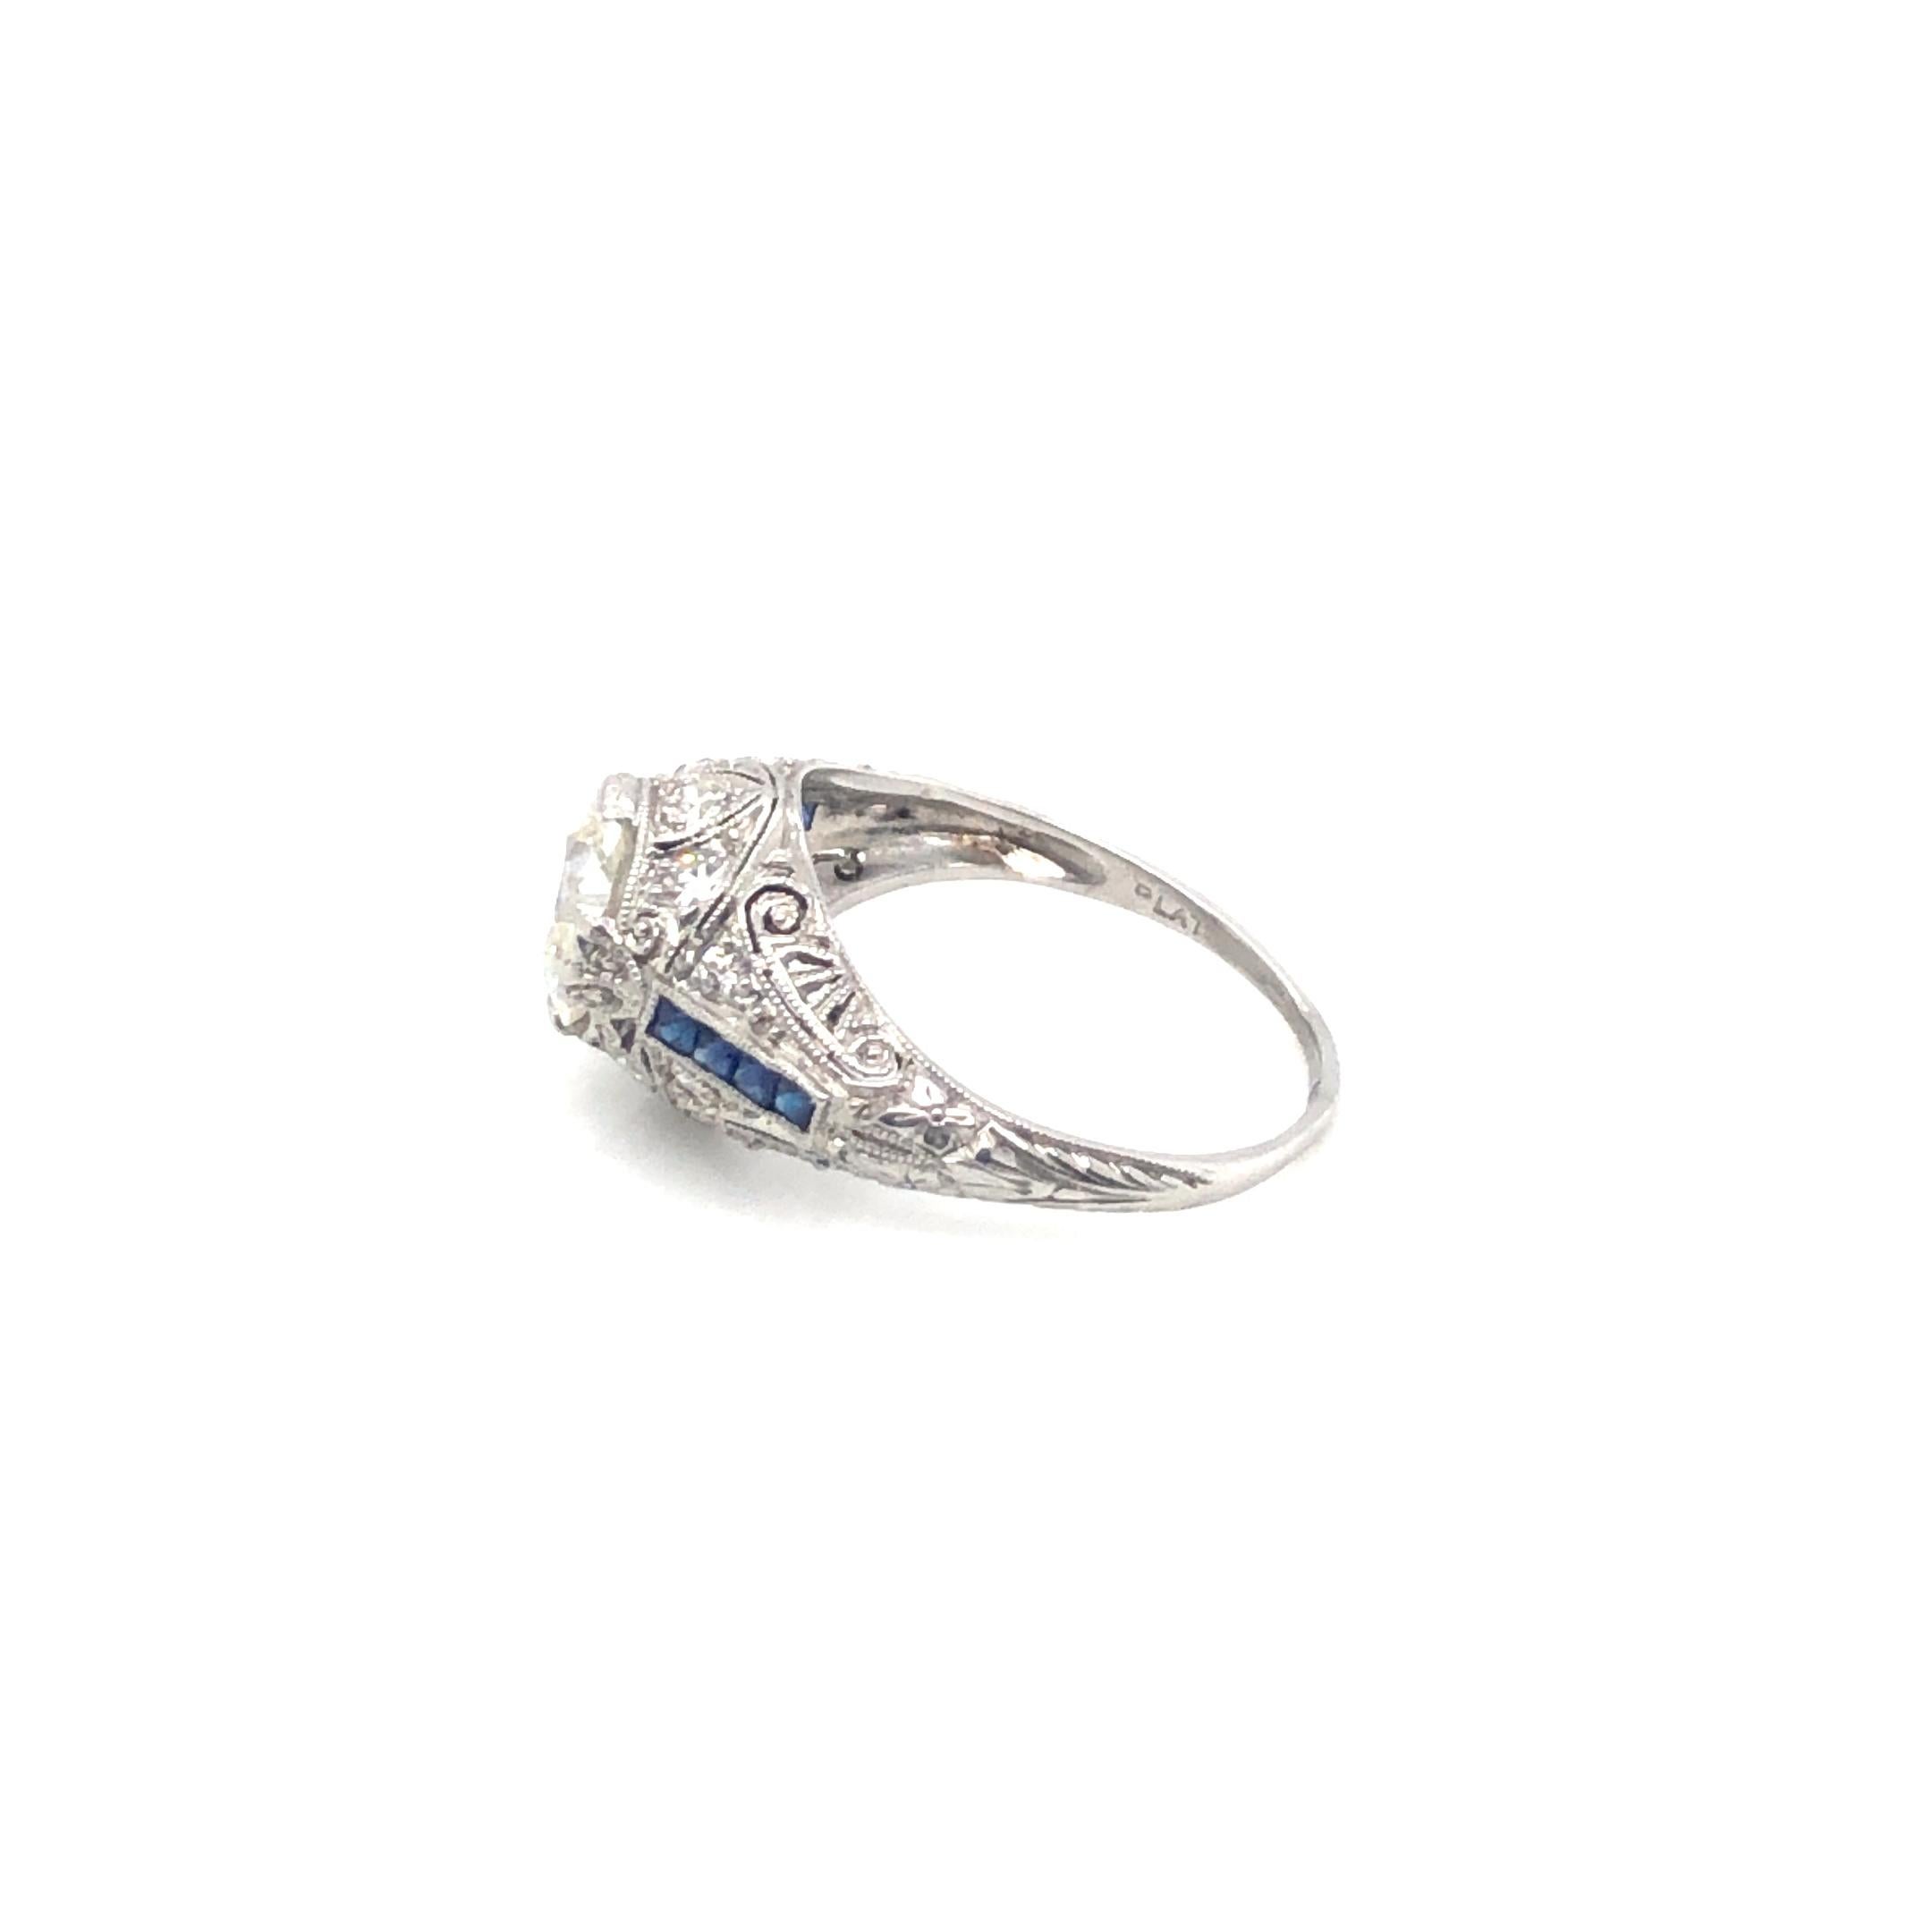 Platinum 1.35ct European Cut Diamond, 6 Sapphires 1.42ctw Art Deco Estate Ring, Size 6 Circa 1920s